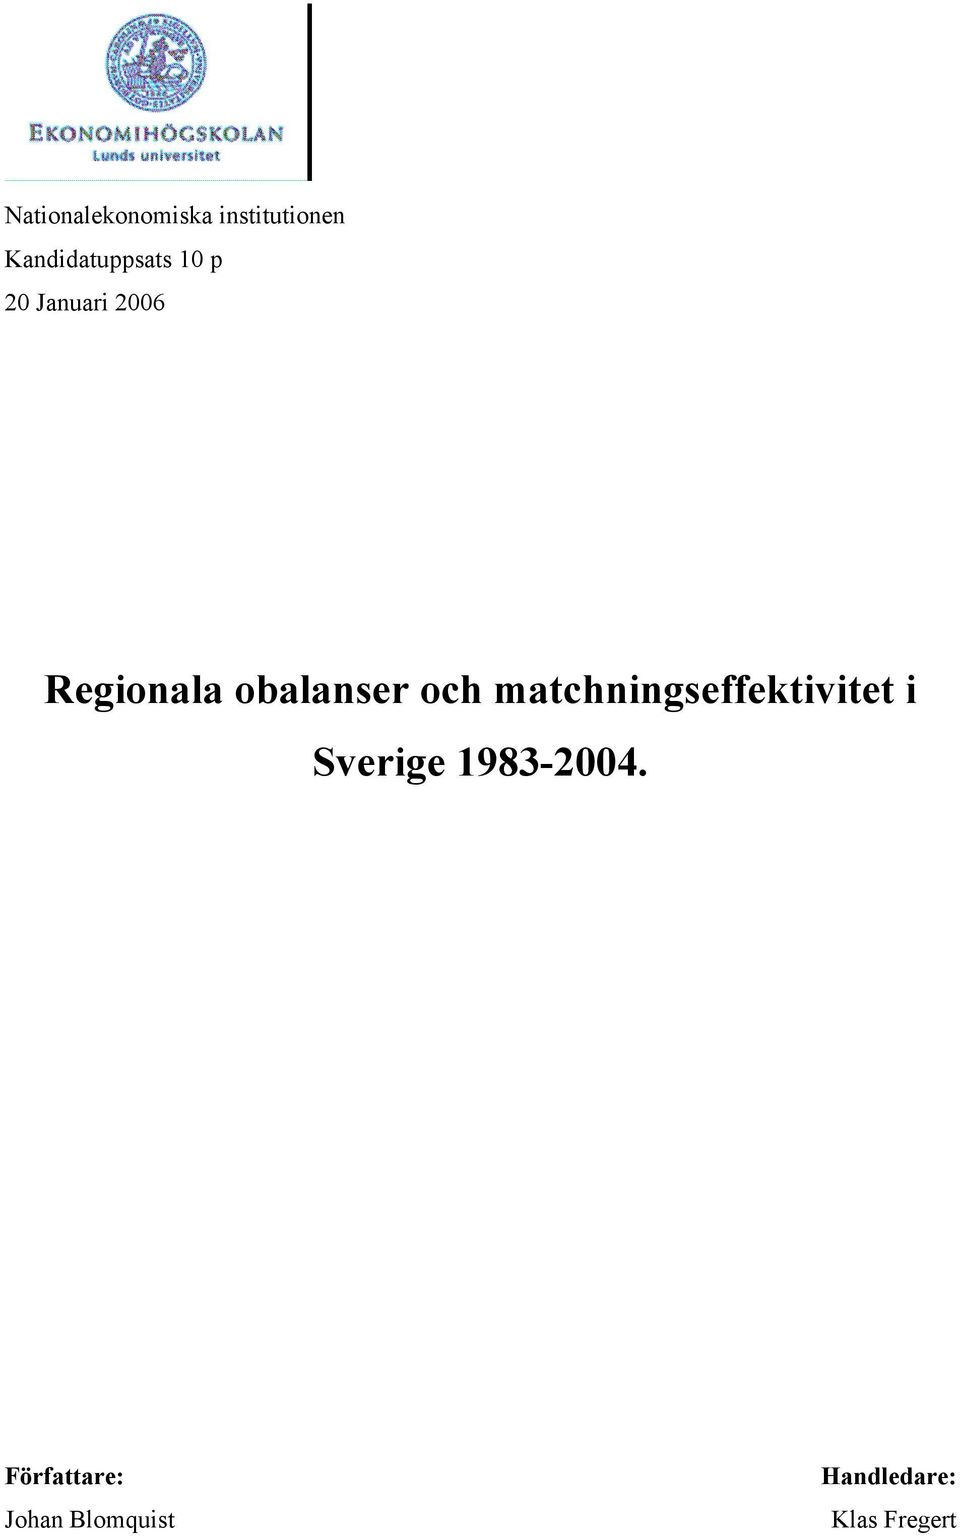 obalanser och matchningseffektivitet i Sverige